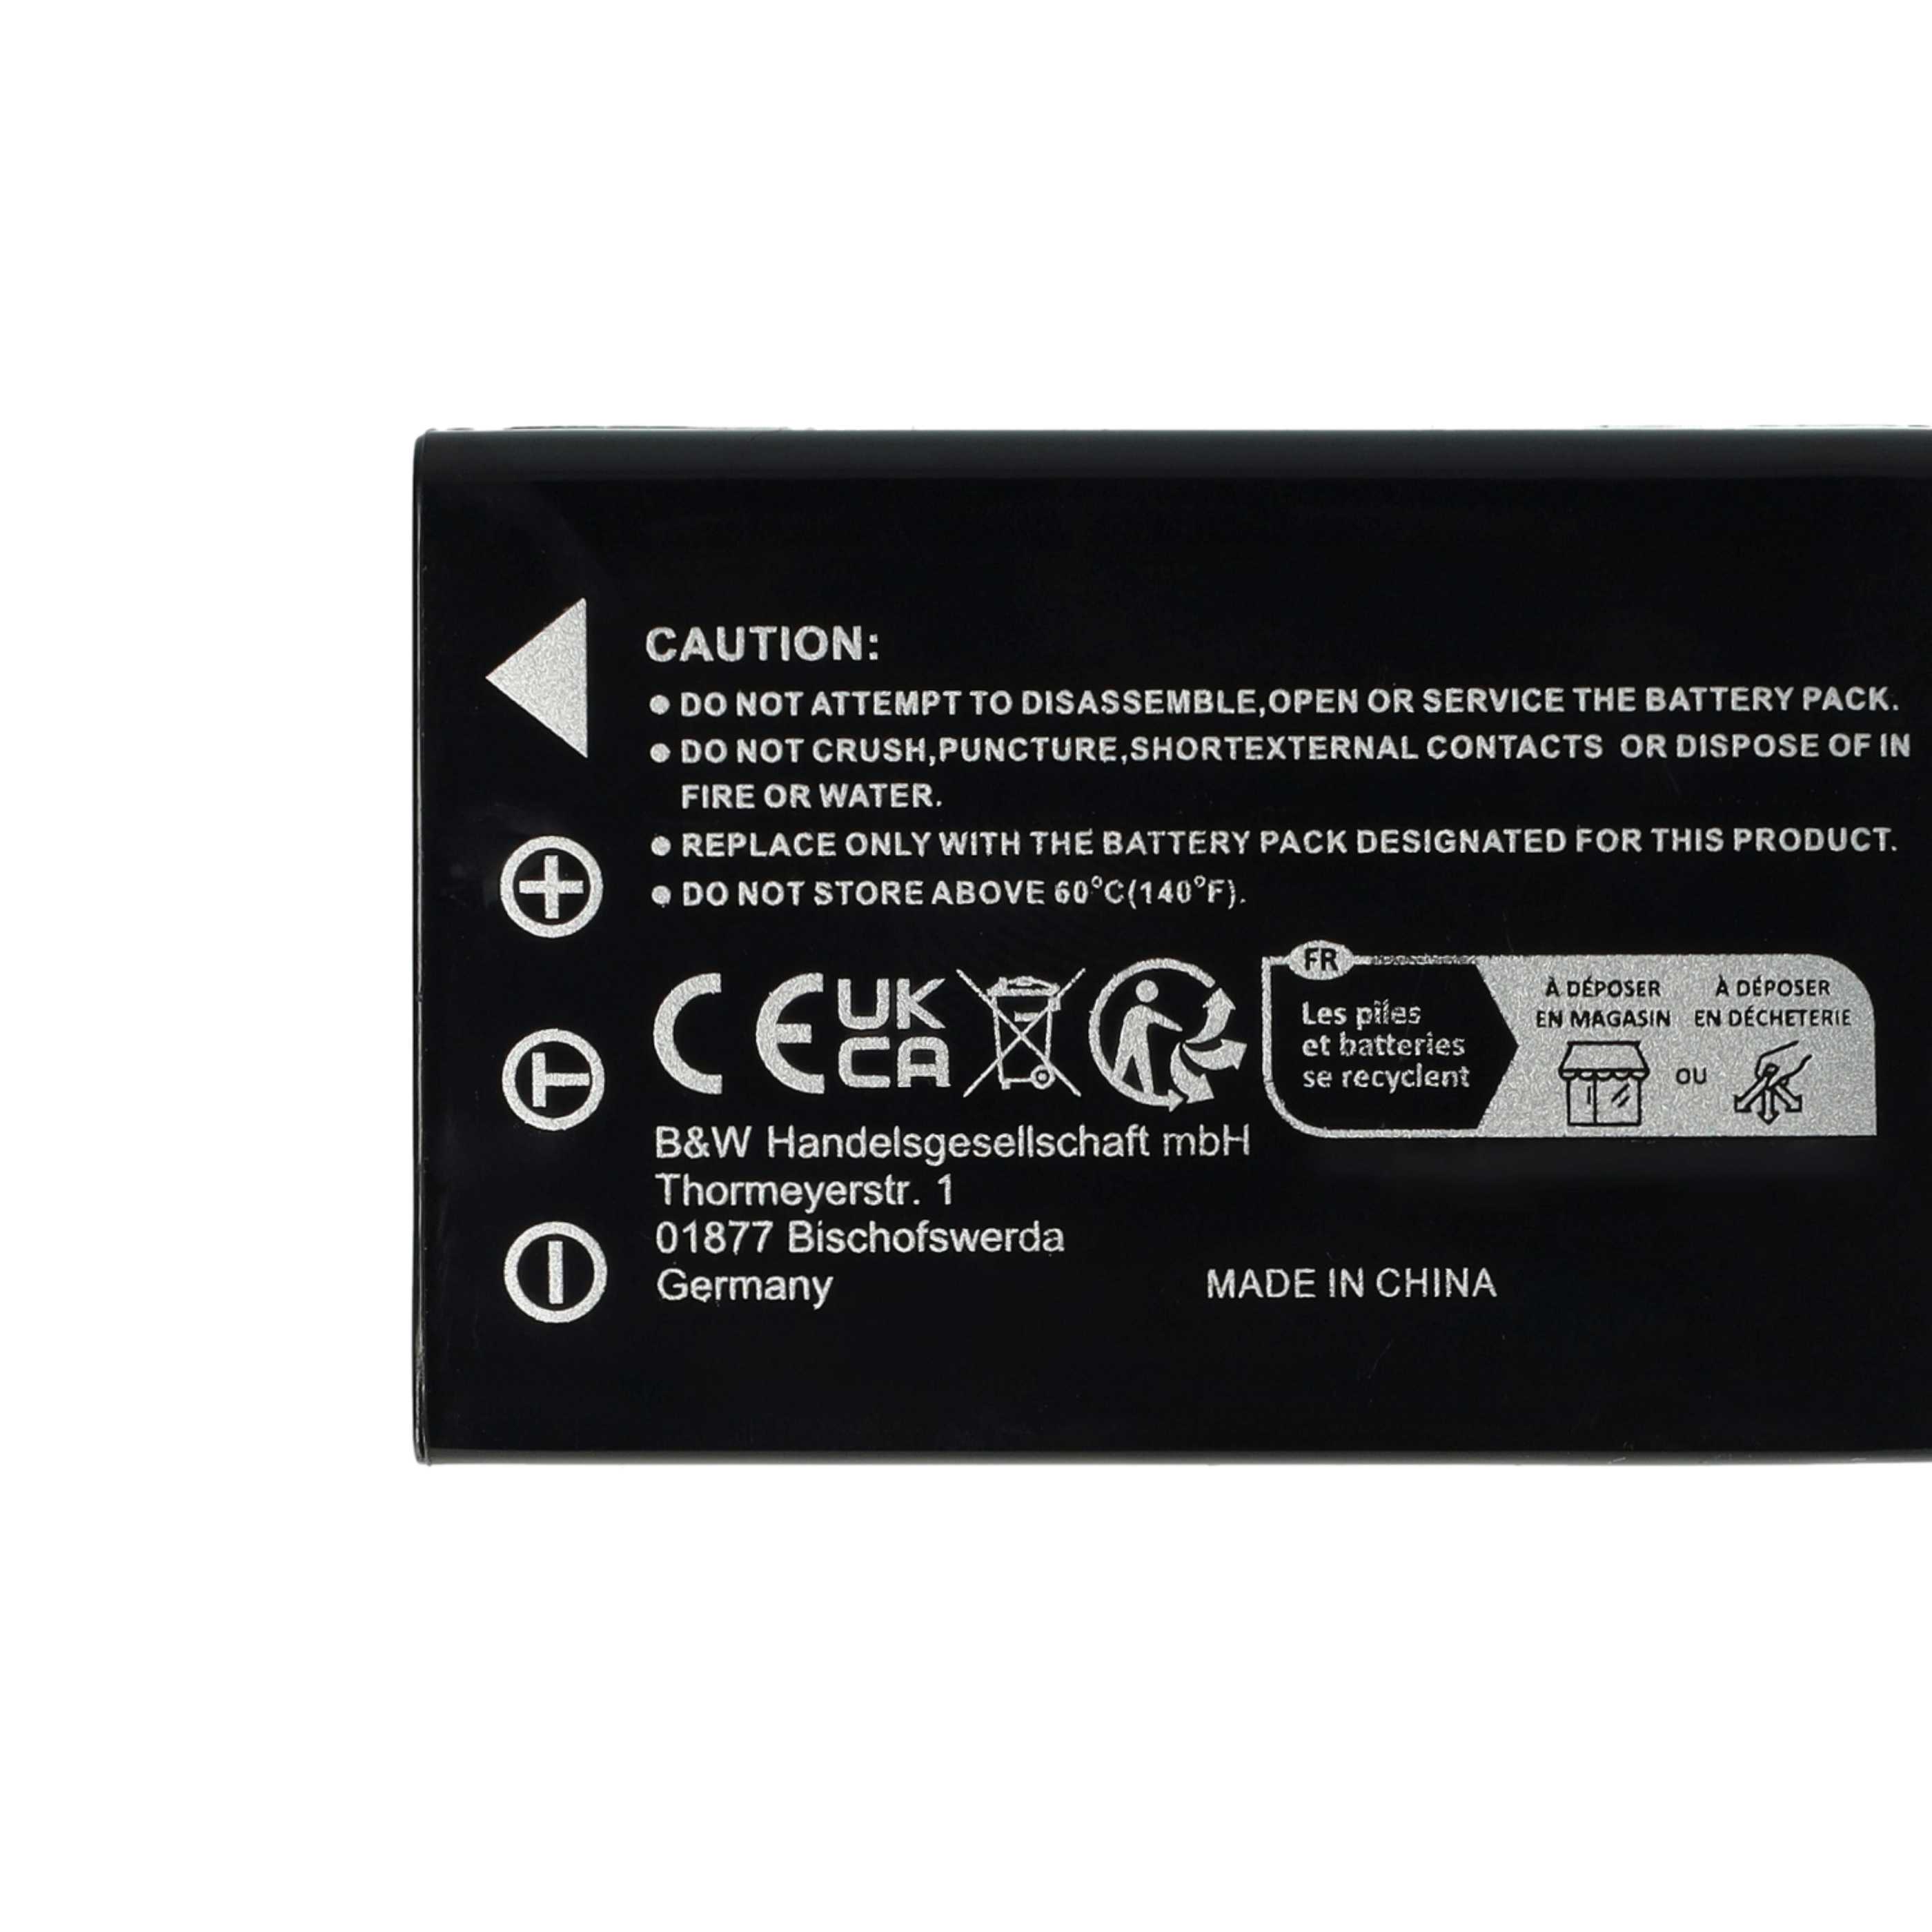 Batterie remplace BenQ DLI-501 pour appareil photo - 1800mAh 3,7V Li-ion